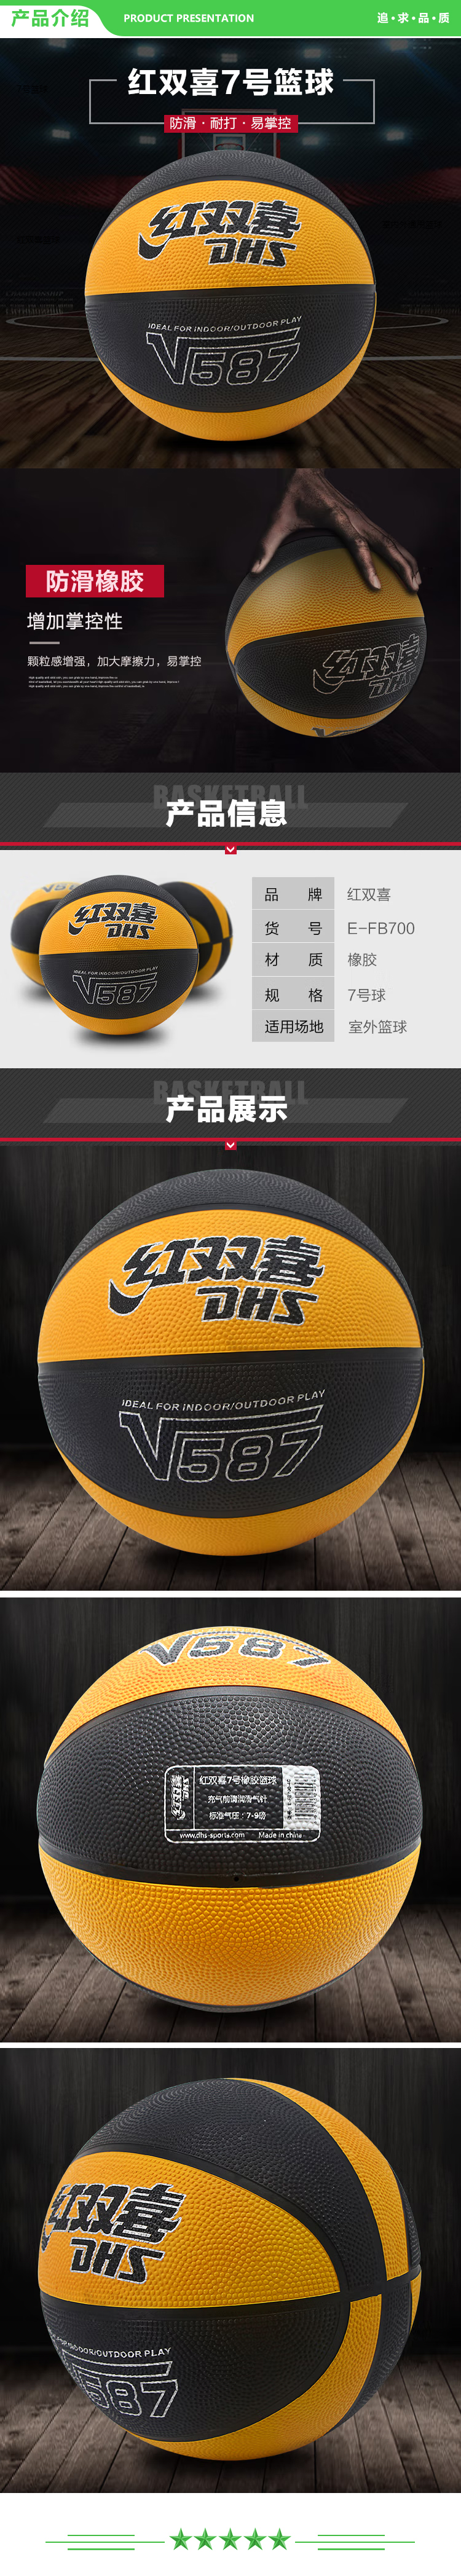 红双喜 DHS V587(E-FB700-4C) 7号篮球橡胶蓝球颗粒易抓握室外耐玩 .jpg